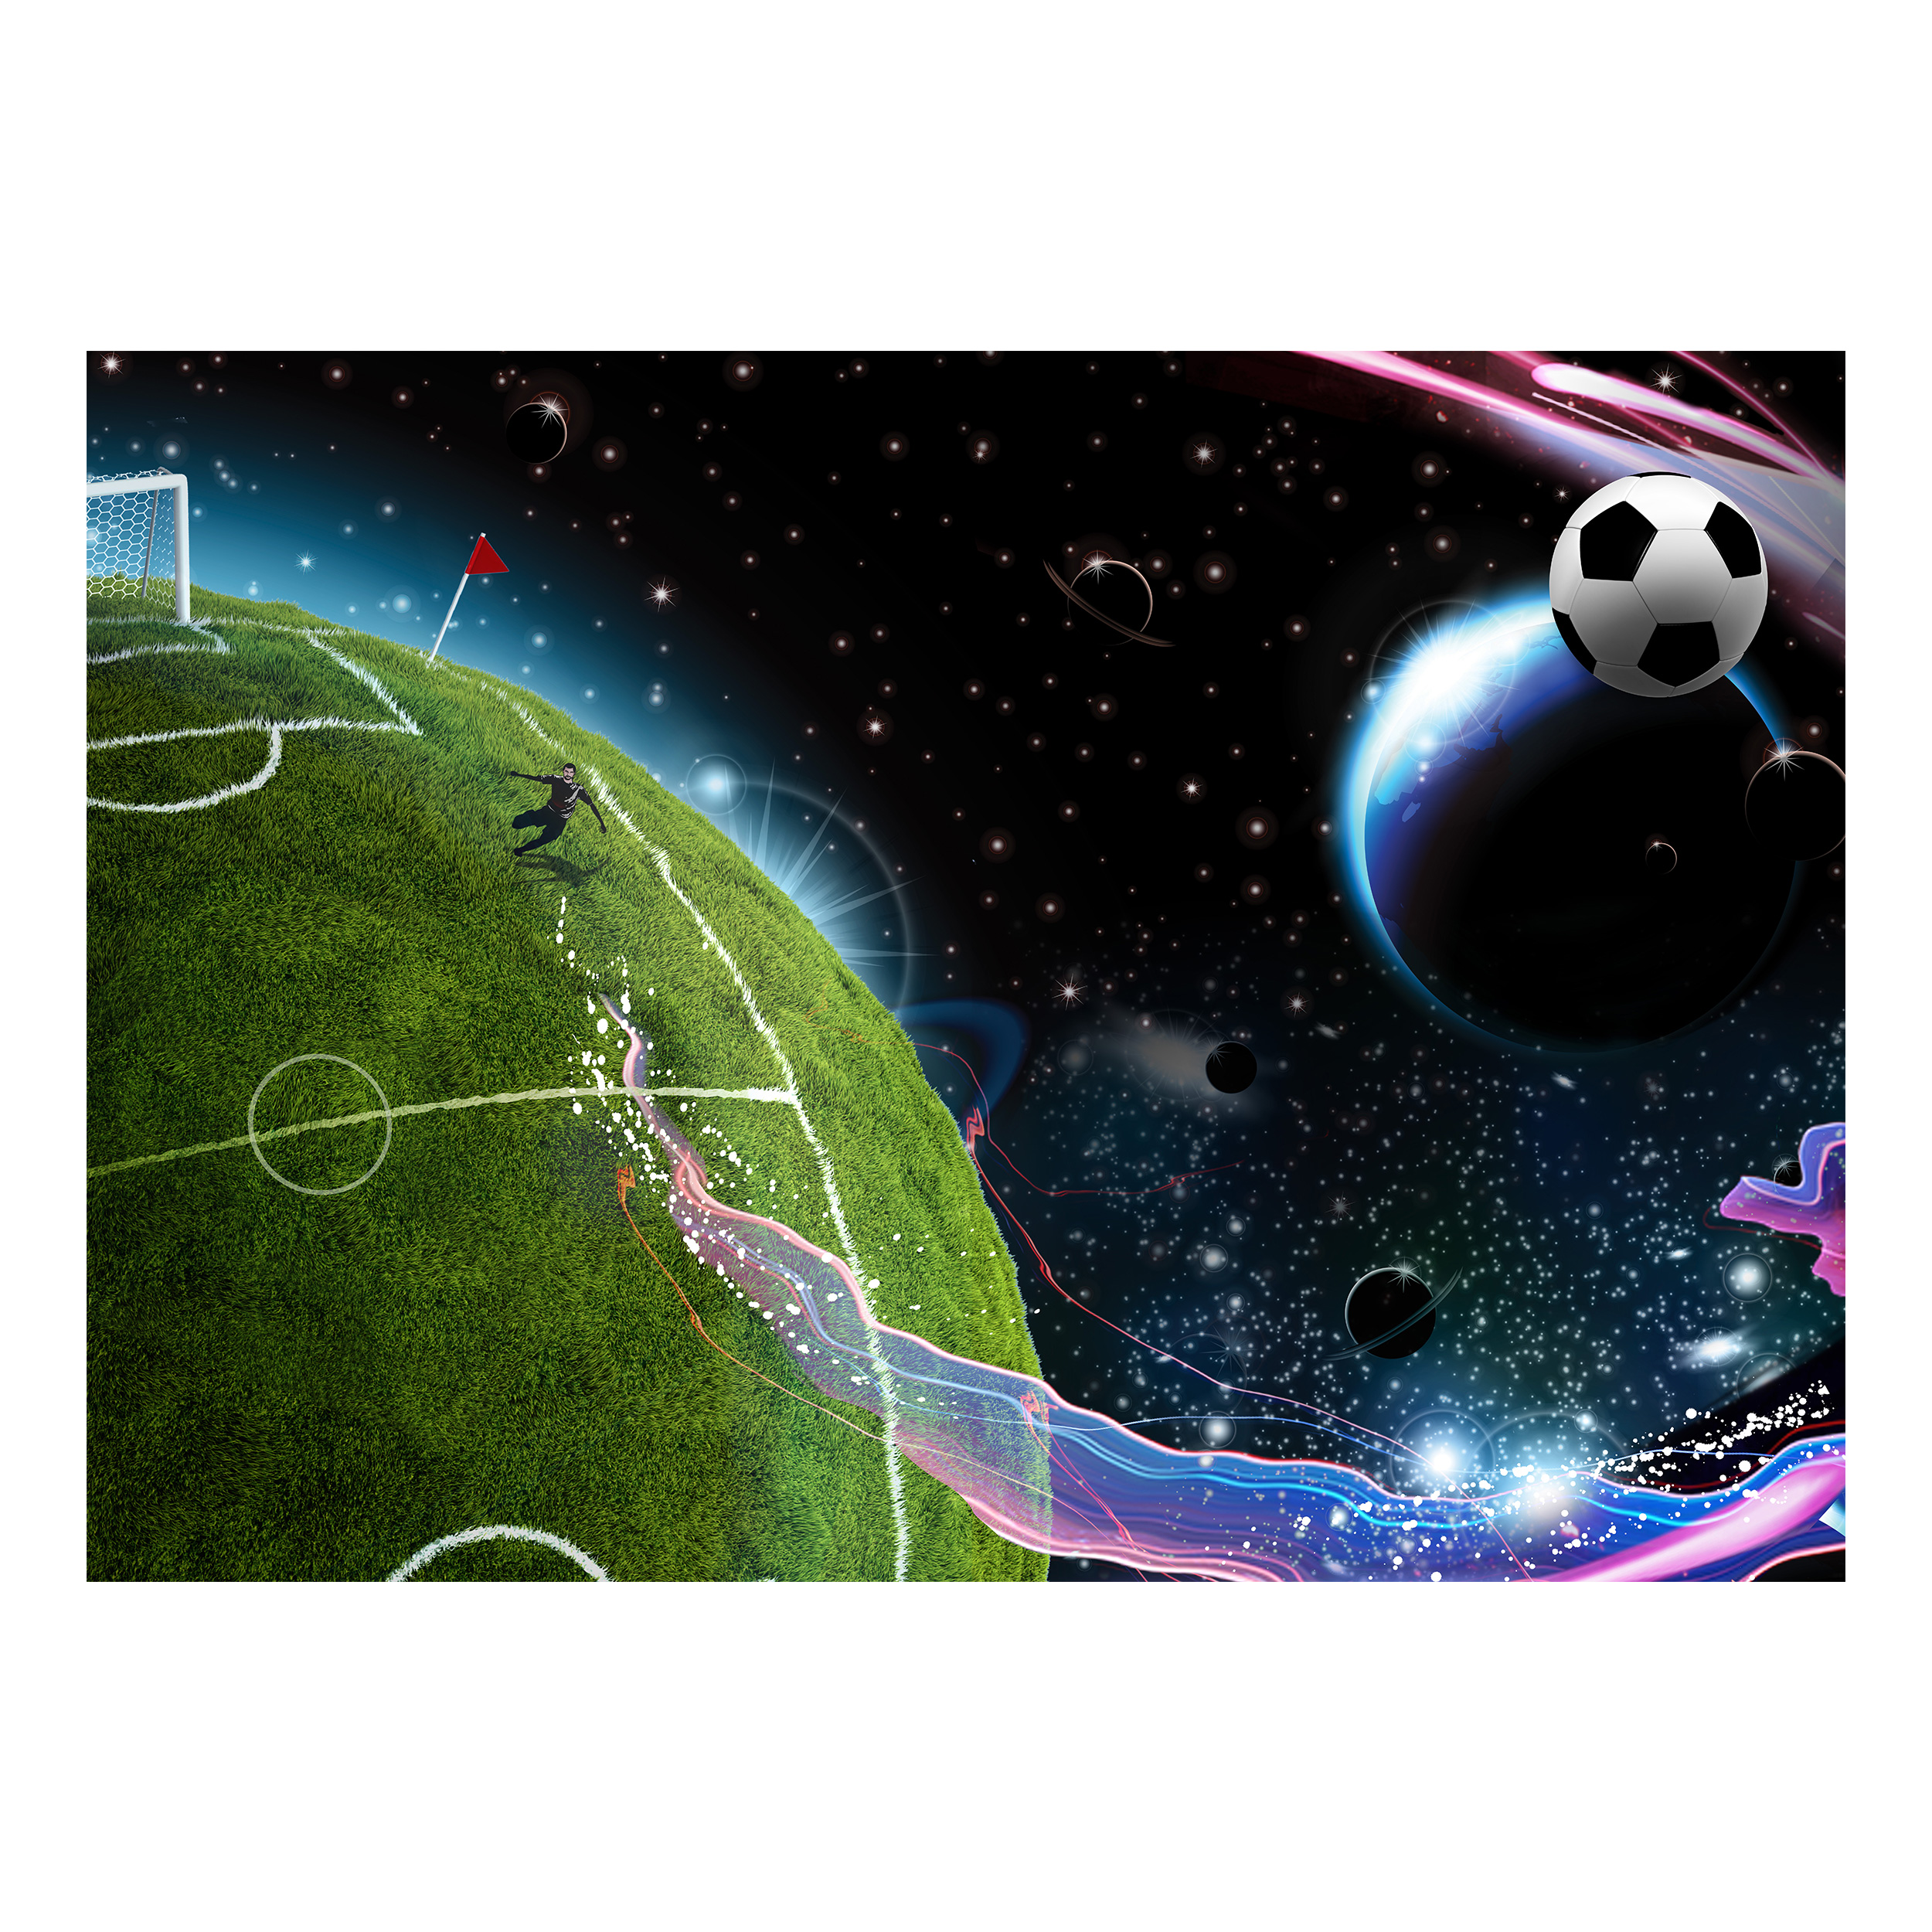 Космический футбол. Футбол в космосе. Космический футбол картинки. Космический футбол игра для детей. Футбол как космос.